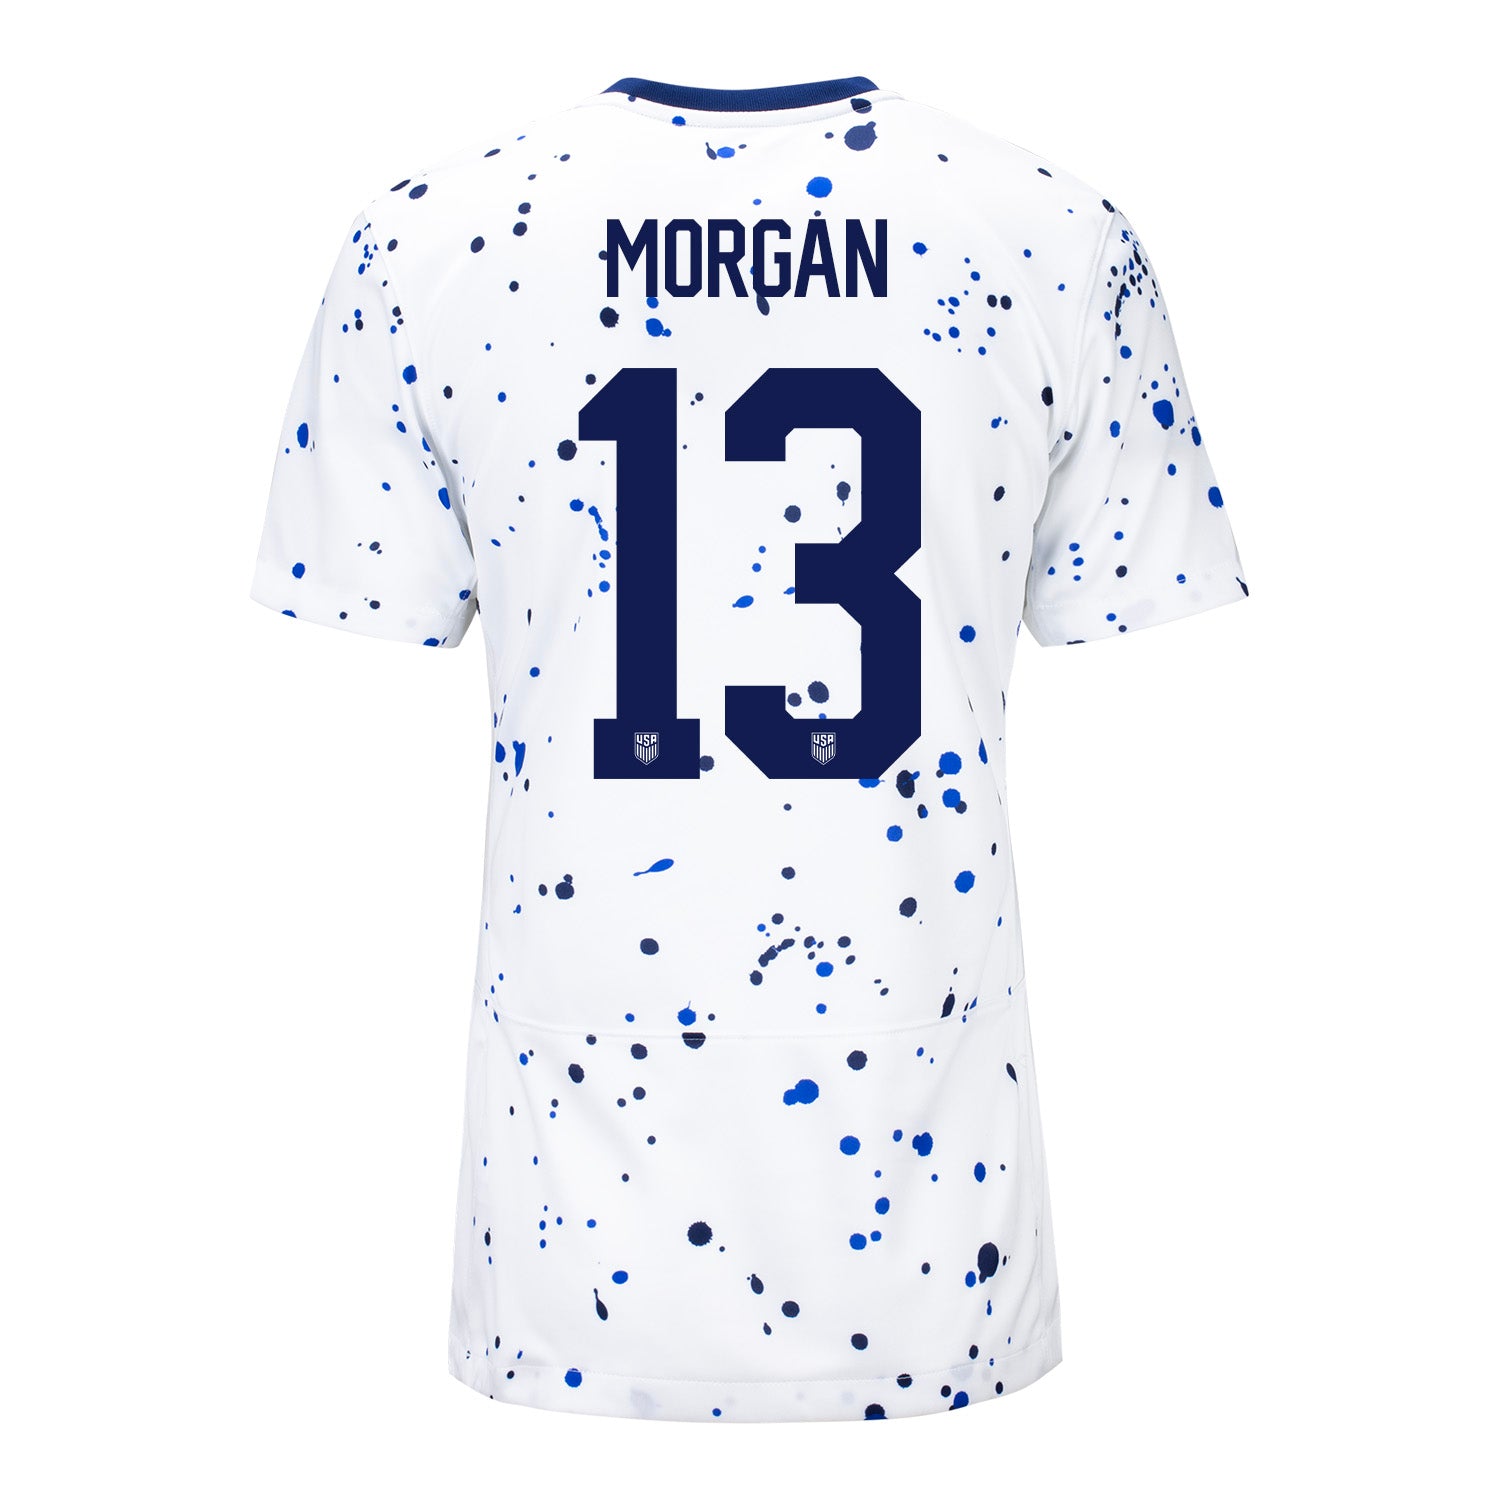 Morgan 13 Women's Nike USWNT Home Stadium Jersey / 2x